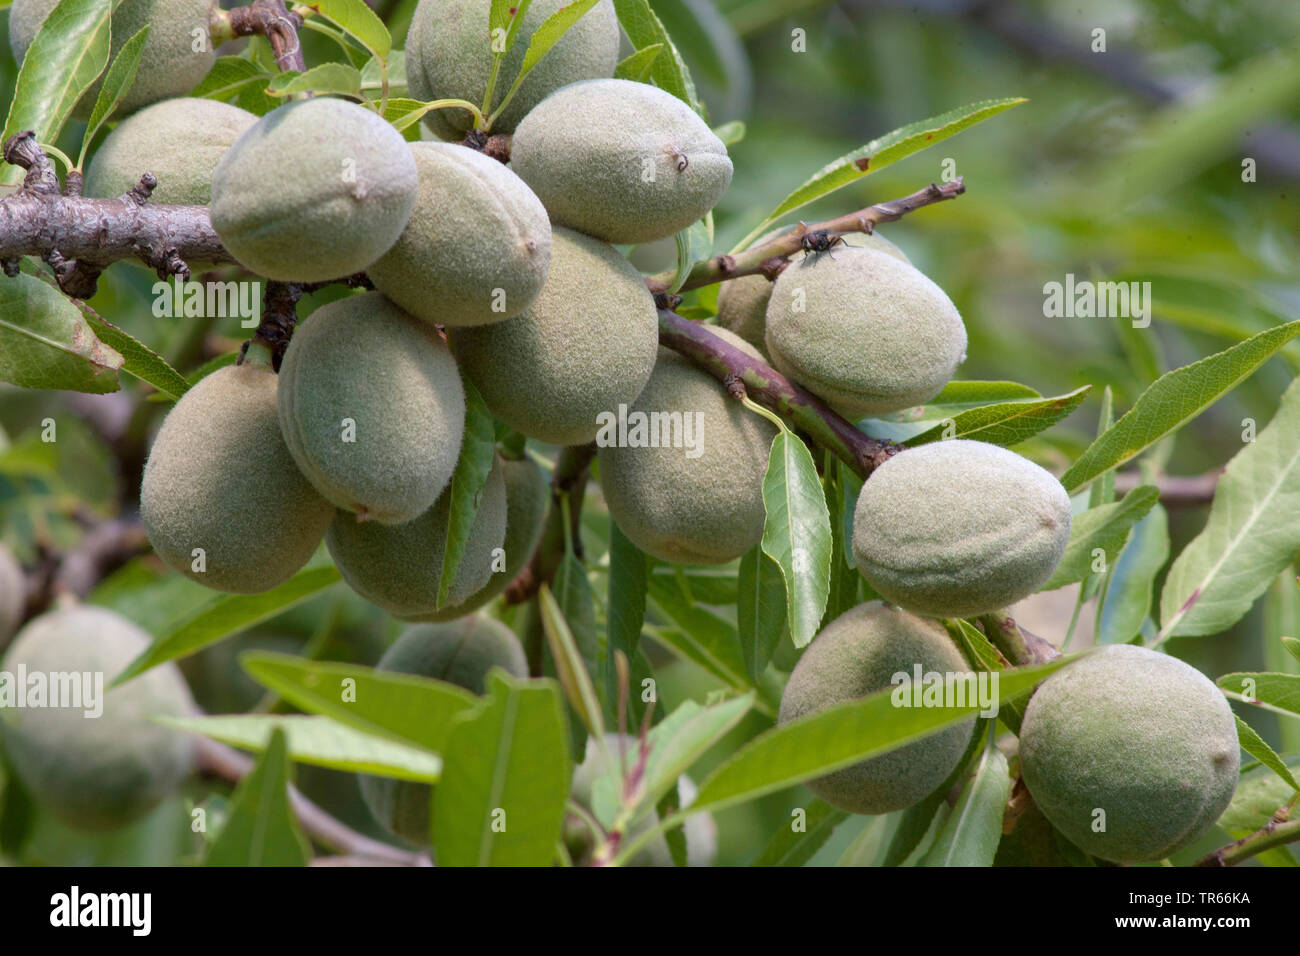 Almond (Prunus dulcis, Prunus amygdalus, Amygdalus communis, Amygdalus dulcis), almond fruits on a tree, Spain, Katalonia Stock Photo